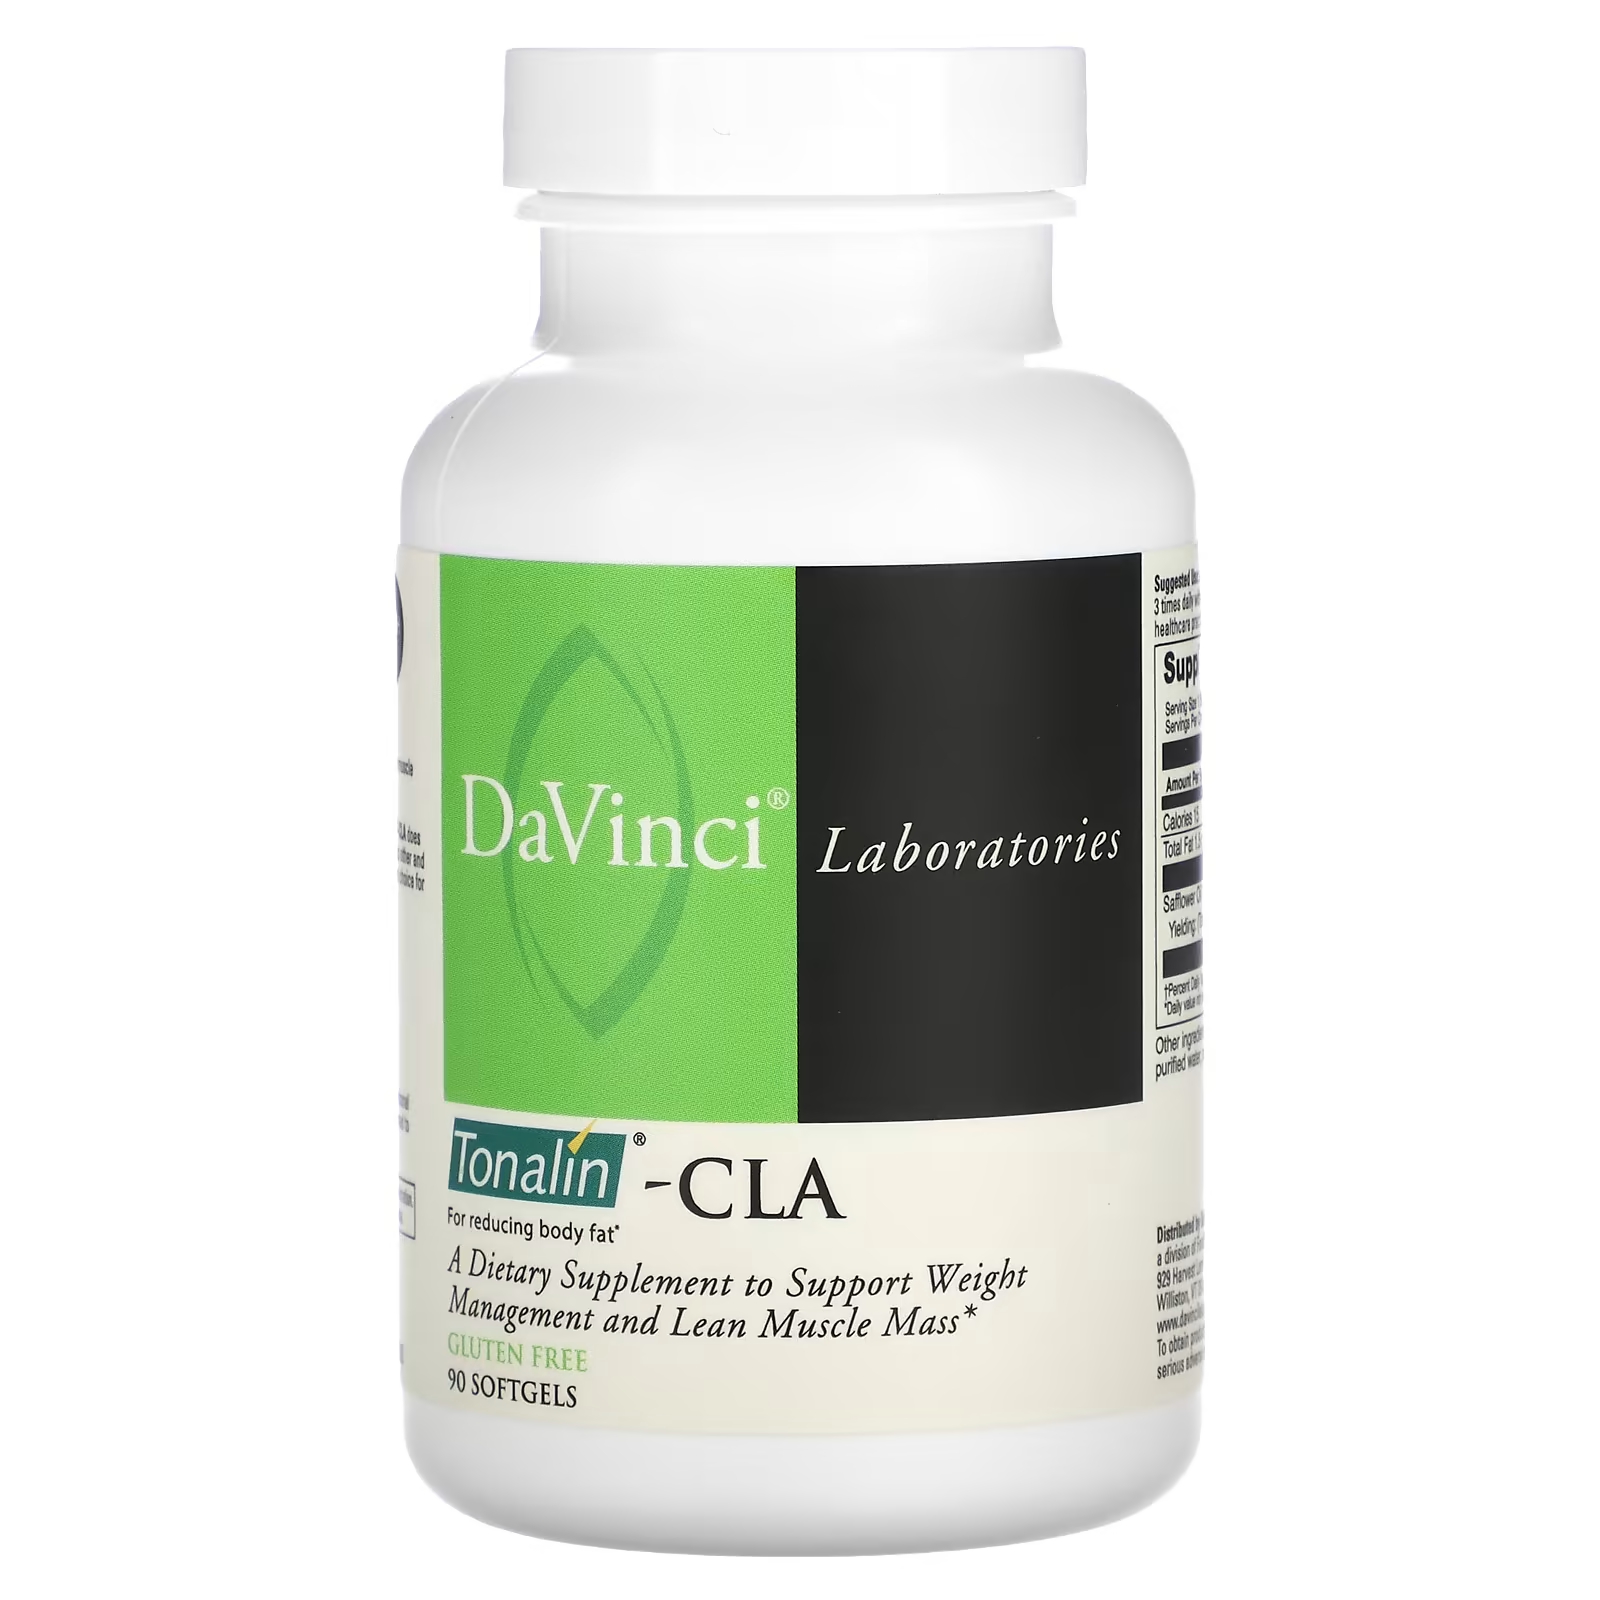 Тоналин DaVinci Laboratories of Vermont - CLA, 90 мягких таблеток добавка для наращивания мышечной массы muscletech 90 капсул